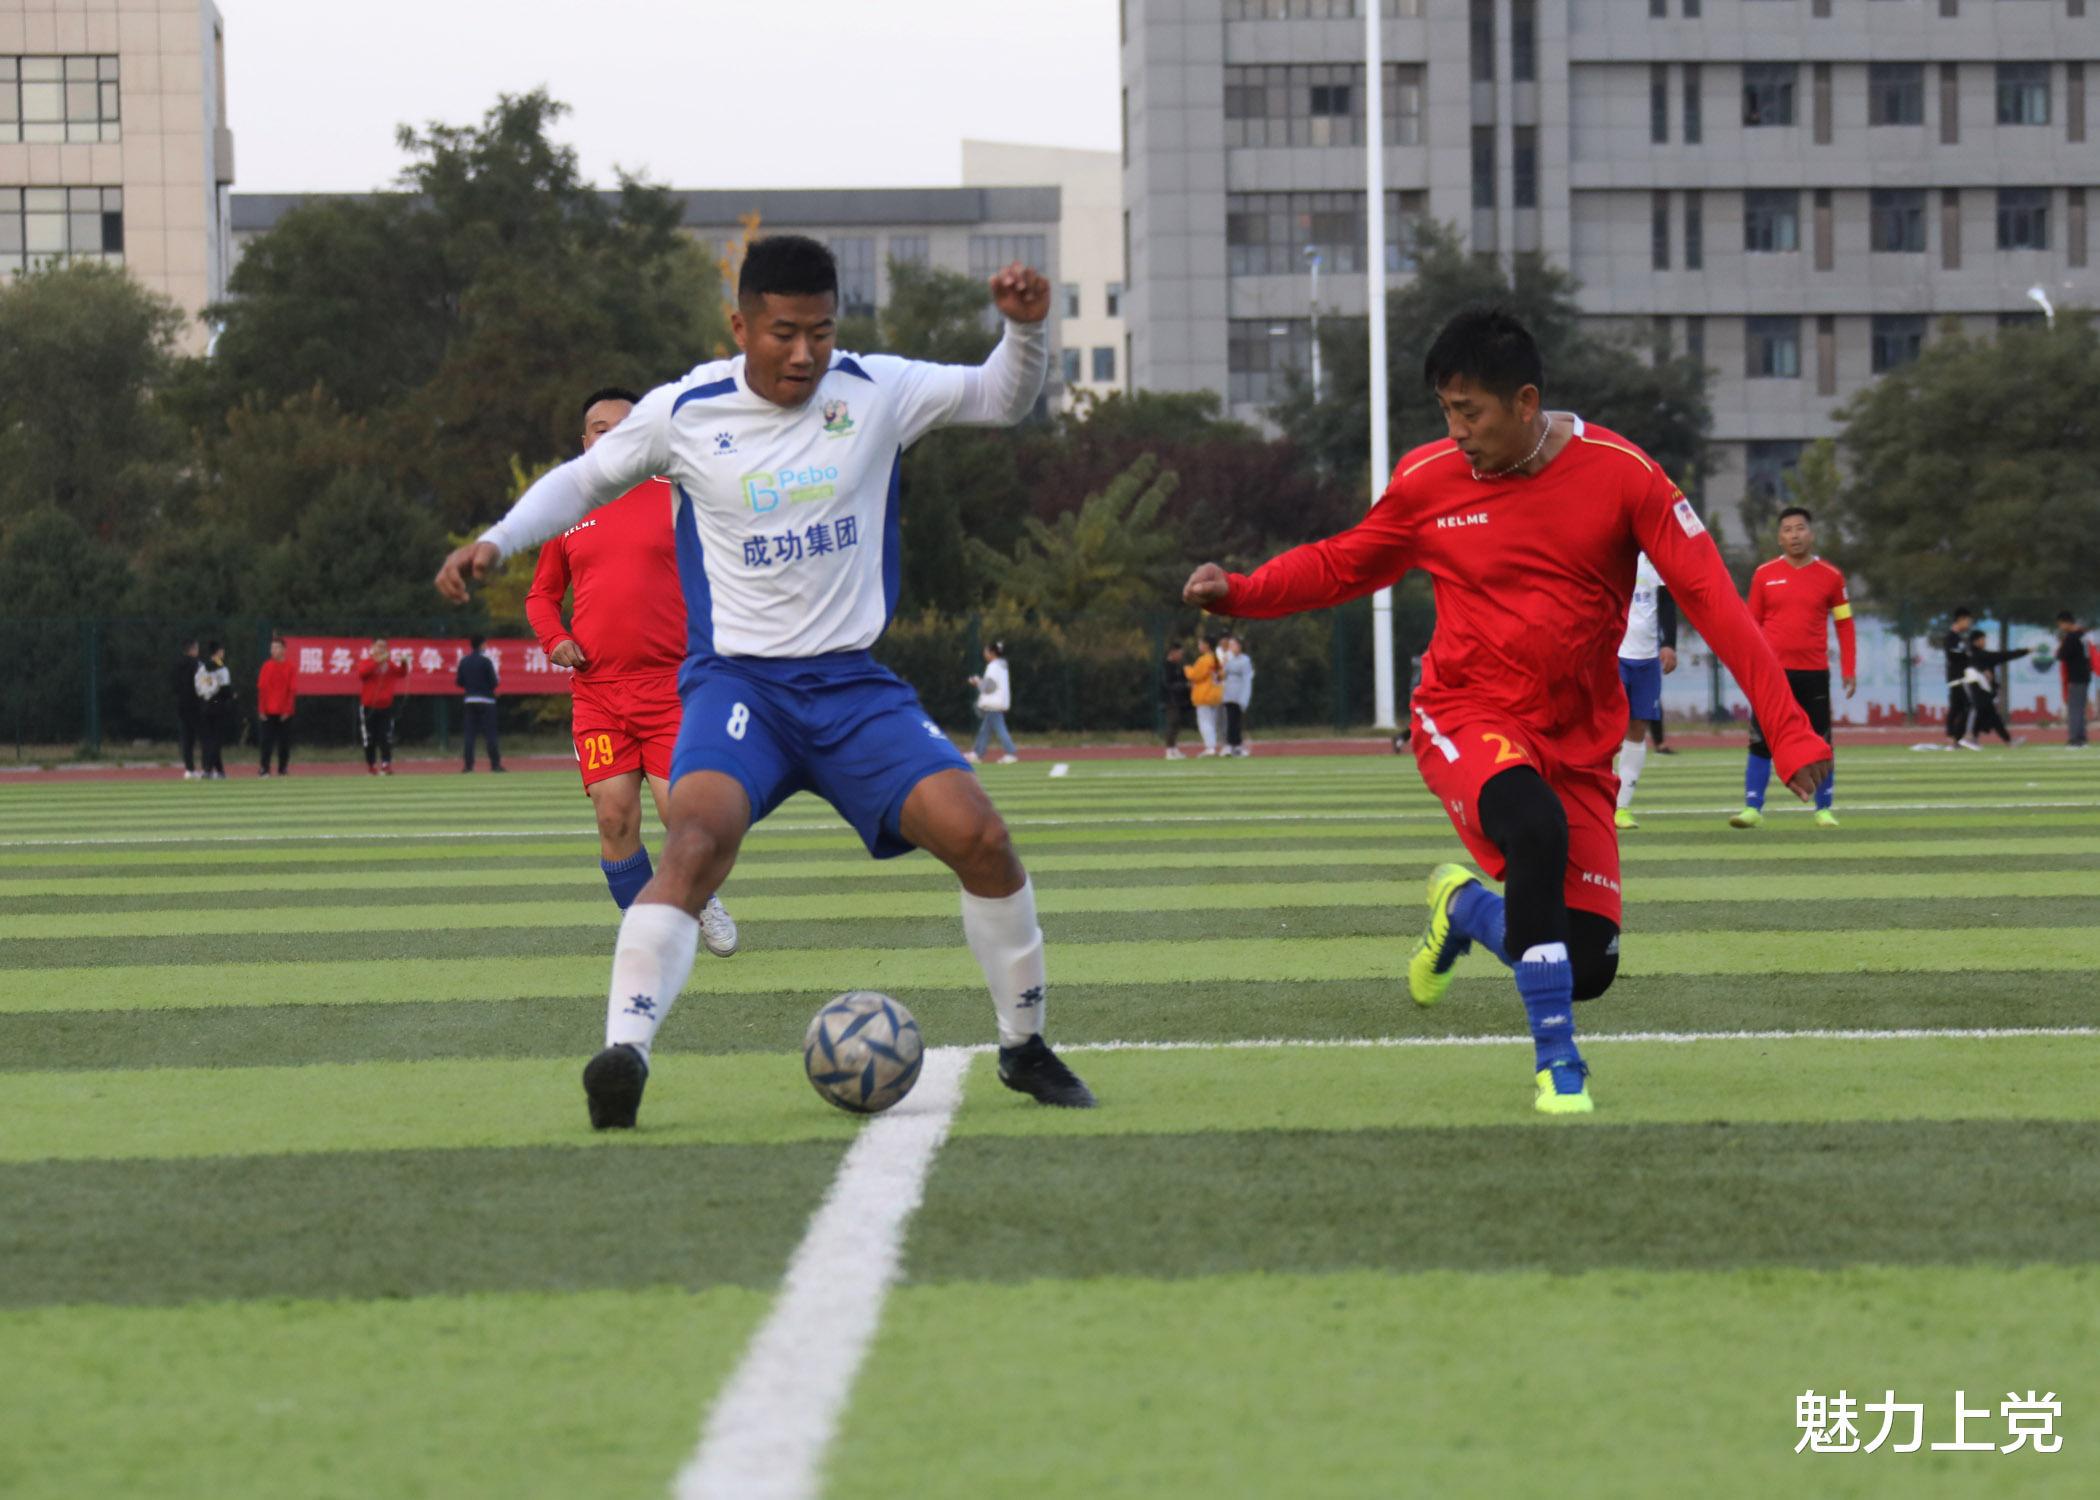 中国职工足球联赛长治市赛区的前四名将在24日进行决赛(16)